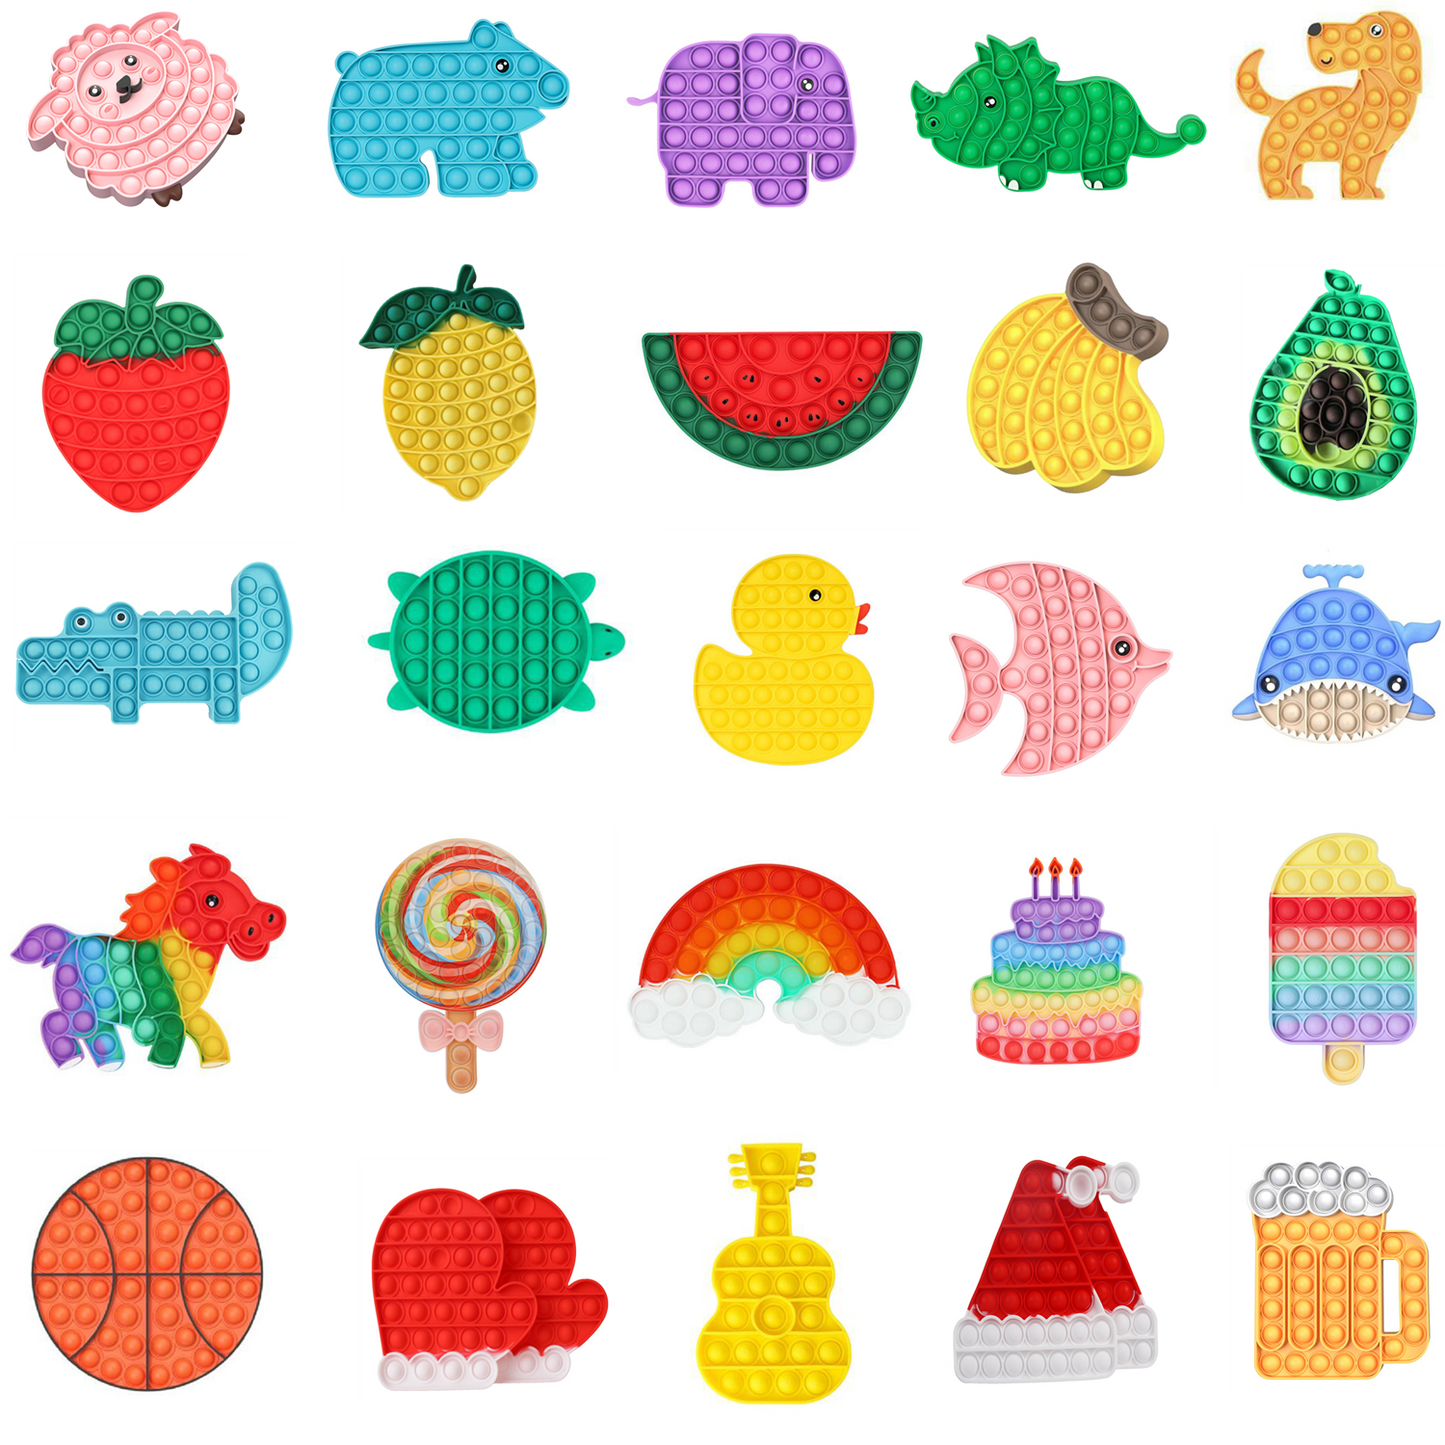 Cute Colorful Pop Bubble Fidget Toy Squeeze Sensory Toy 5 packs per set